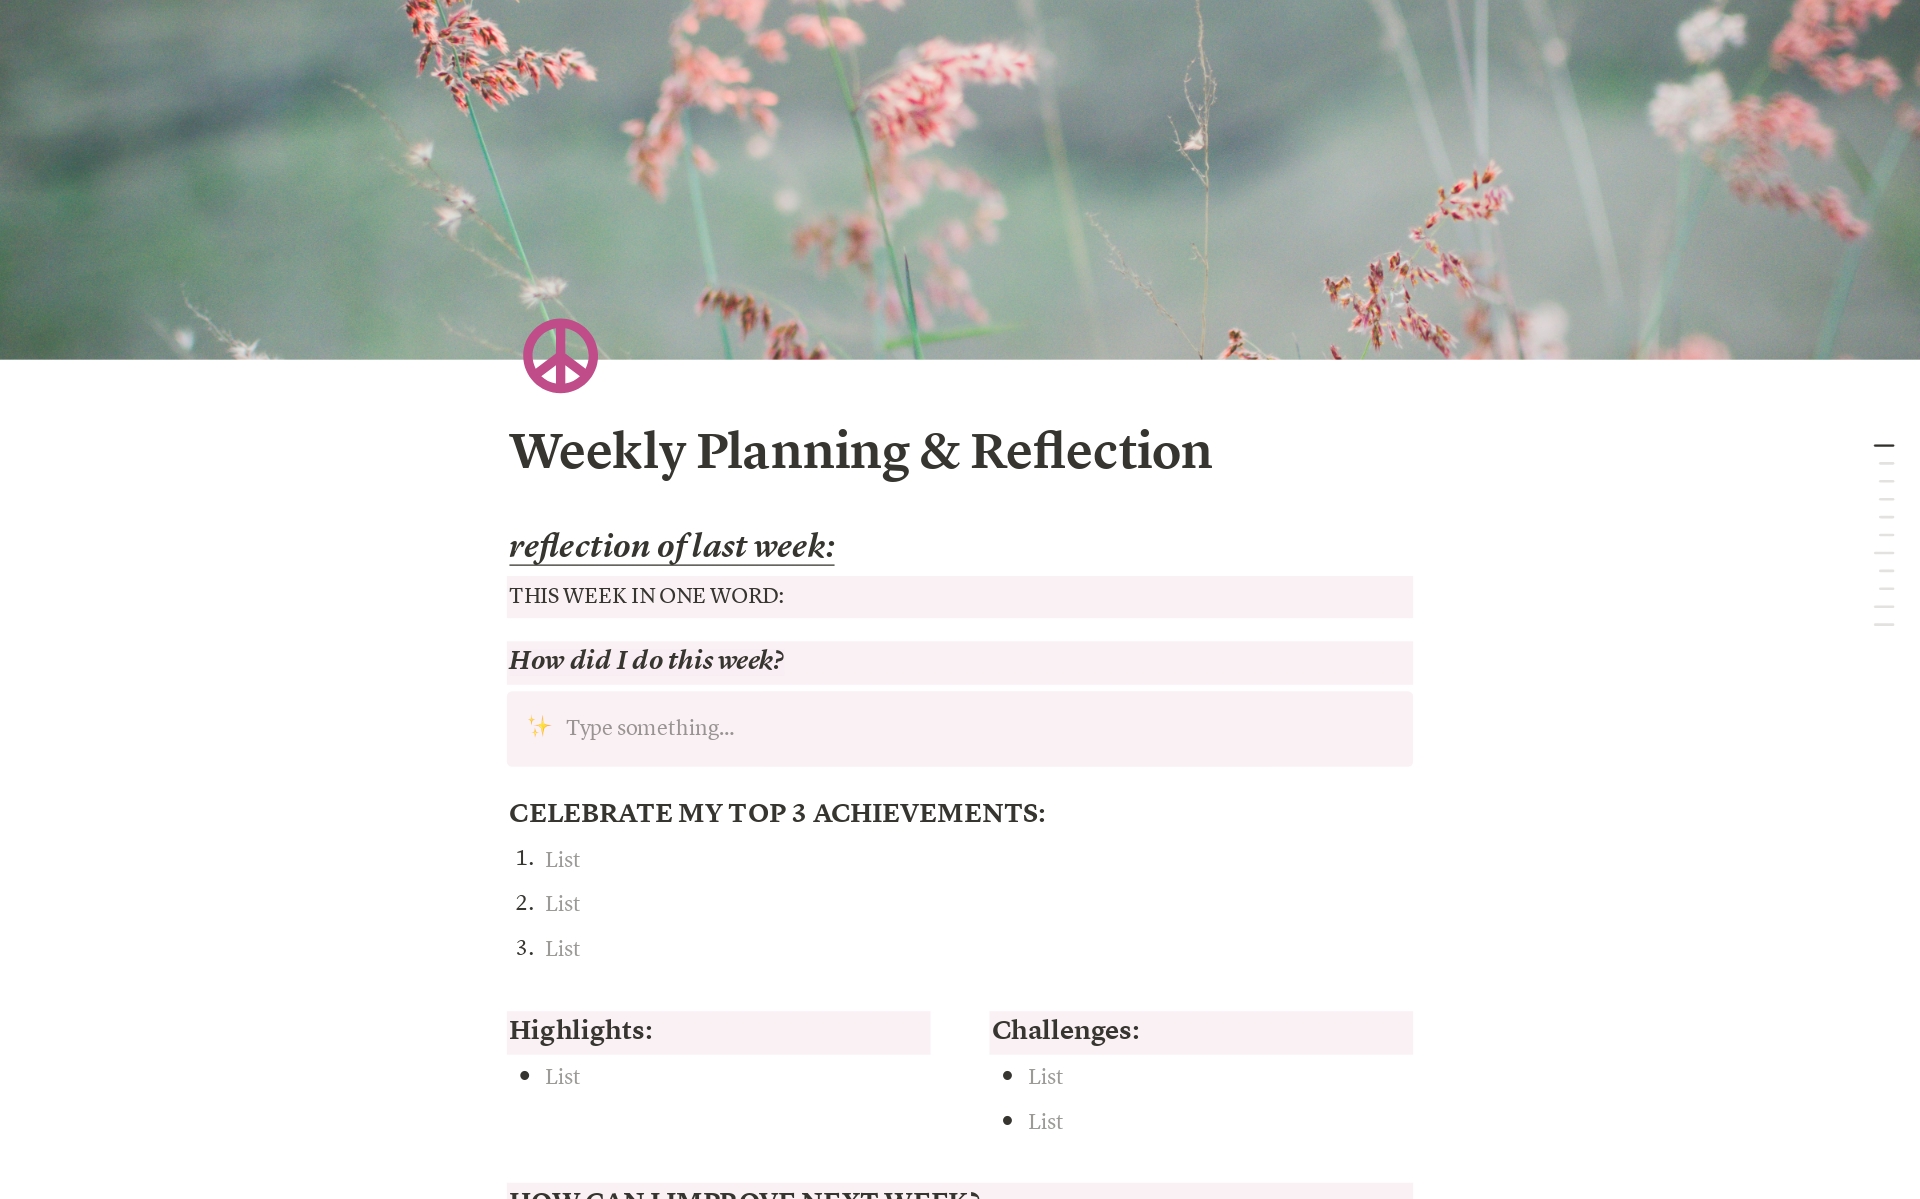 Weekly Planning & Reflectionのテンプレートのプレビュー